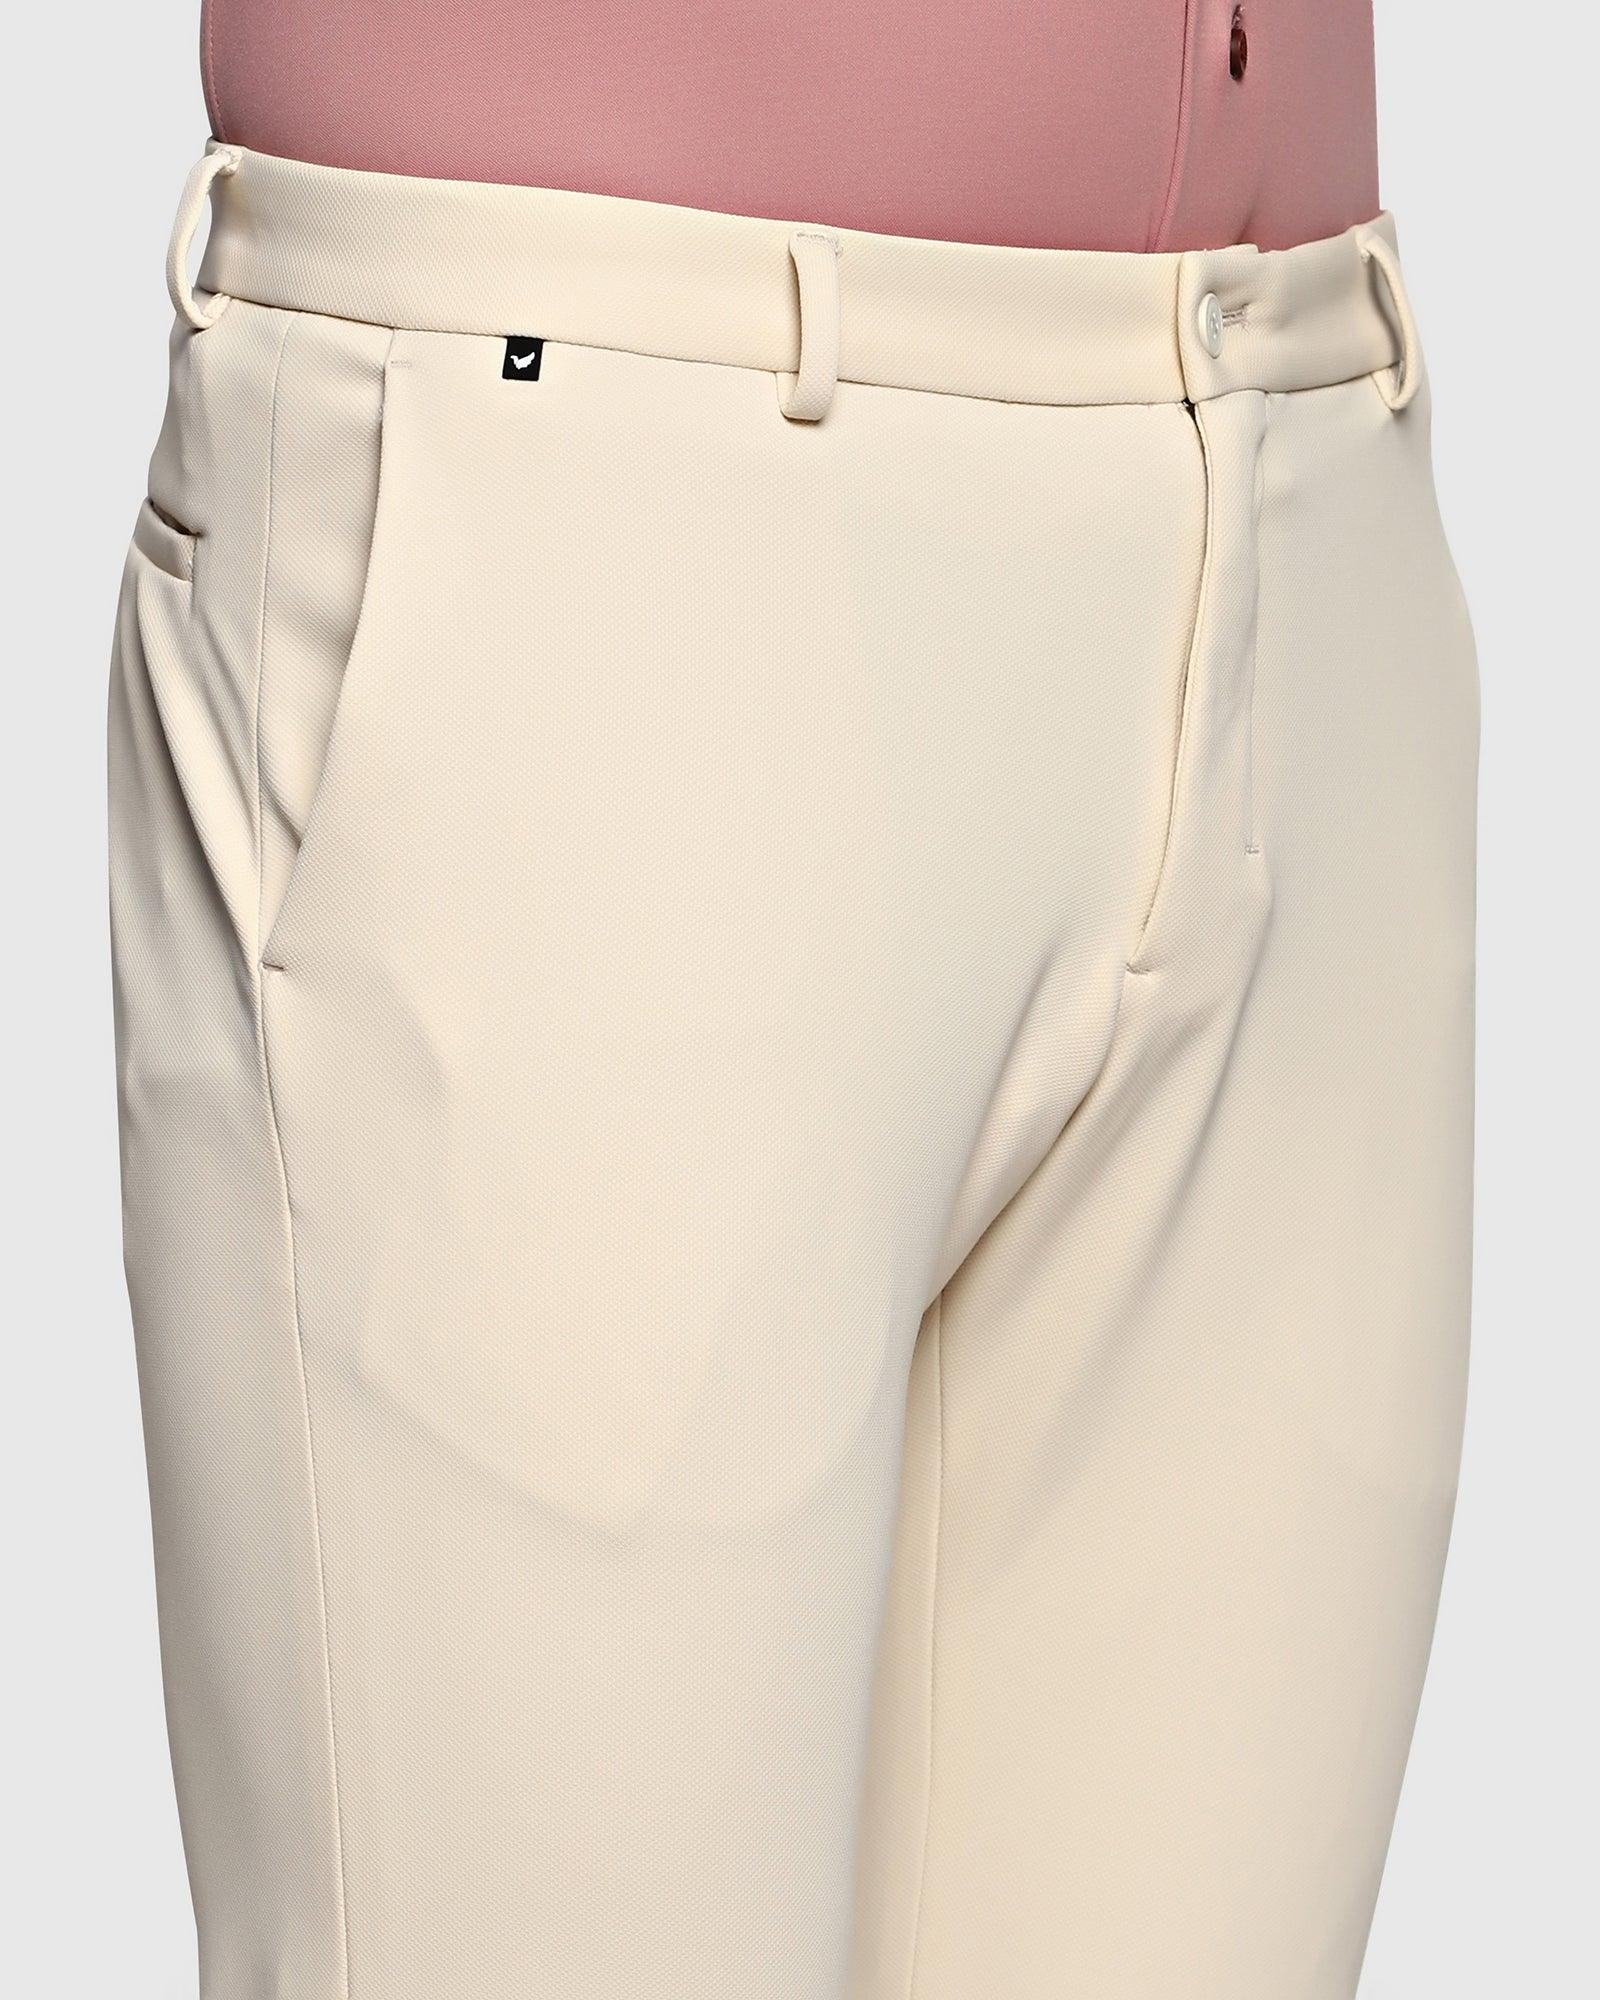 techpro textured formal trousers in cream phoenix fit kol blackberrys clothing 4